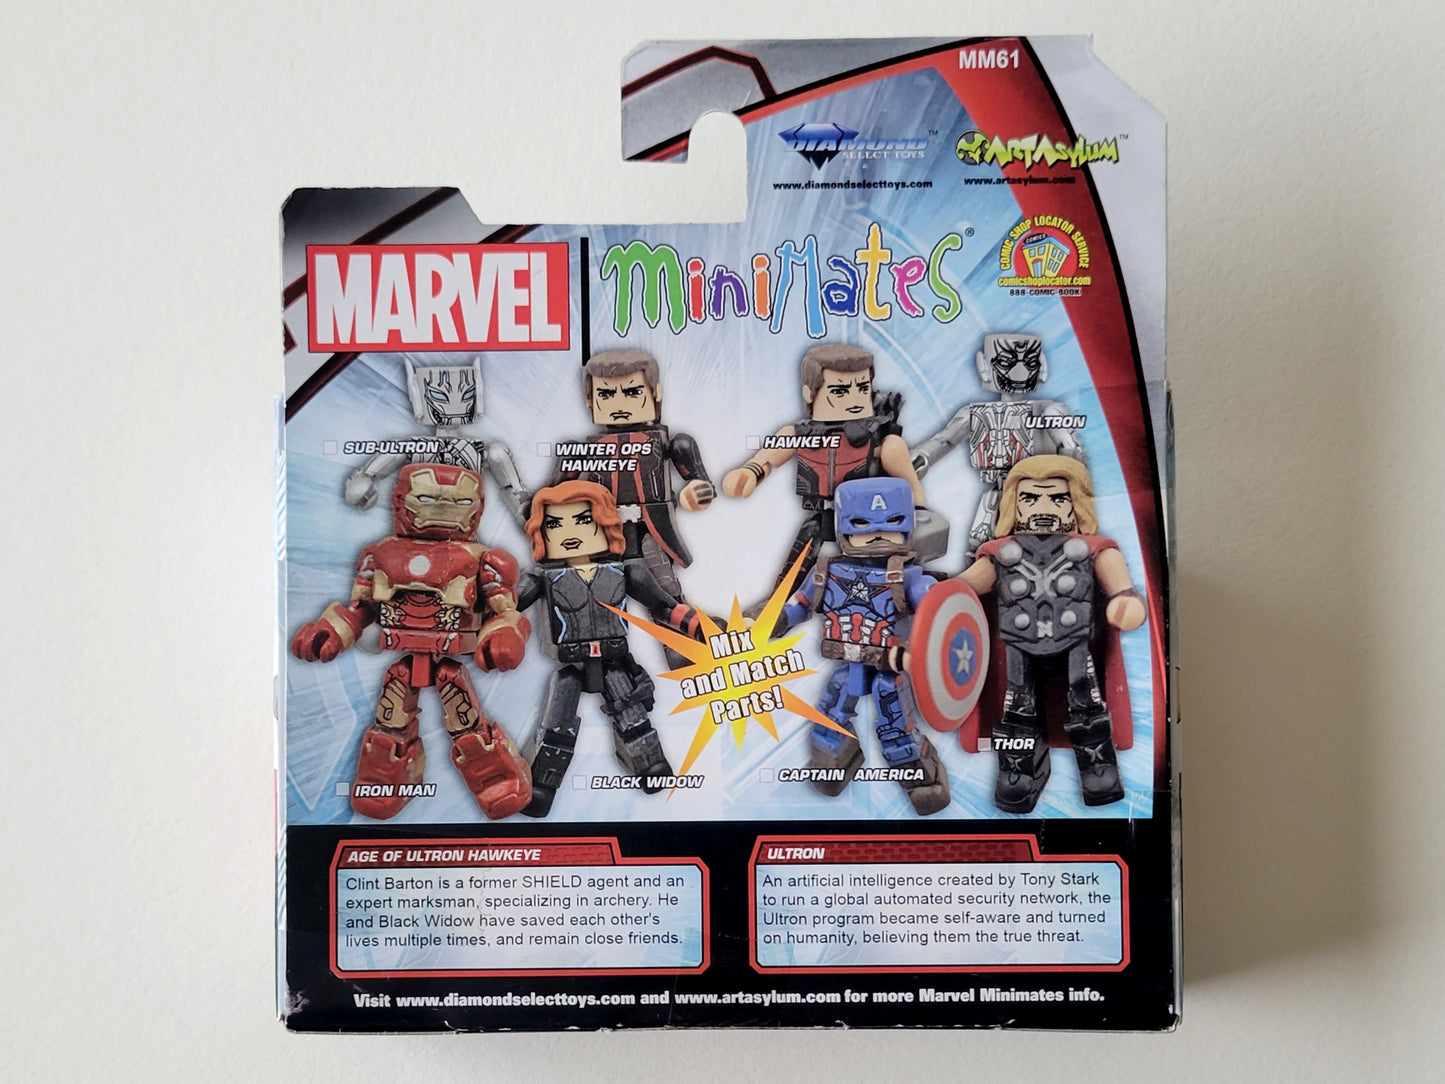 Avengers Age of Ultron Minimates Hawkeye & Ultron Action Figures